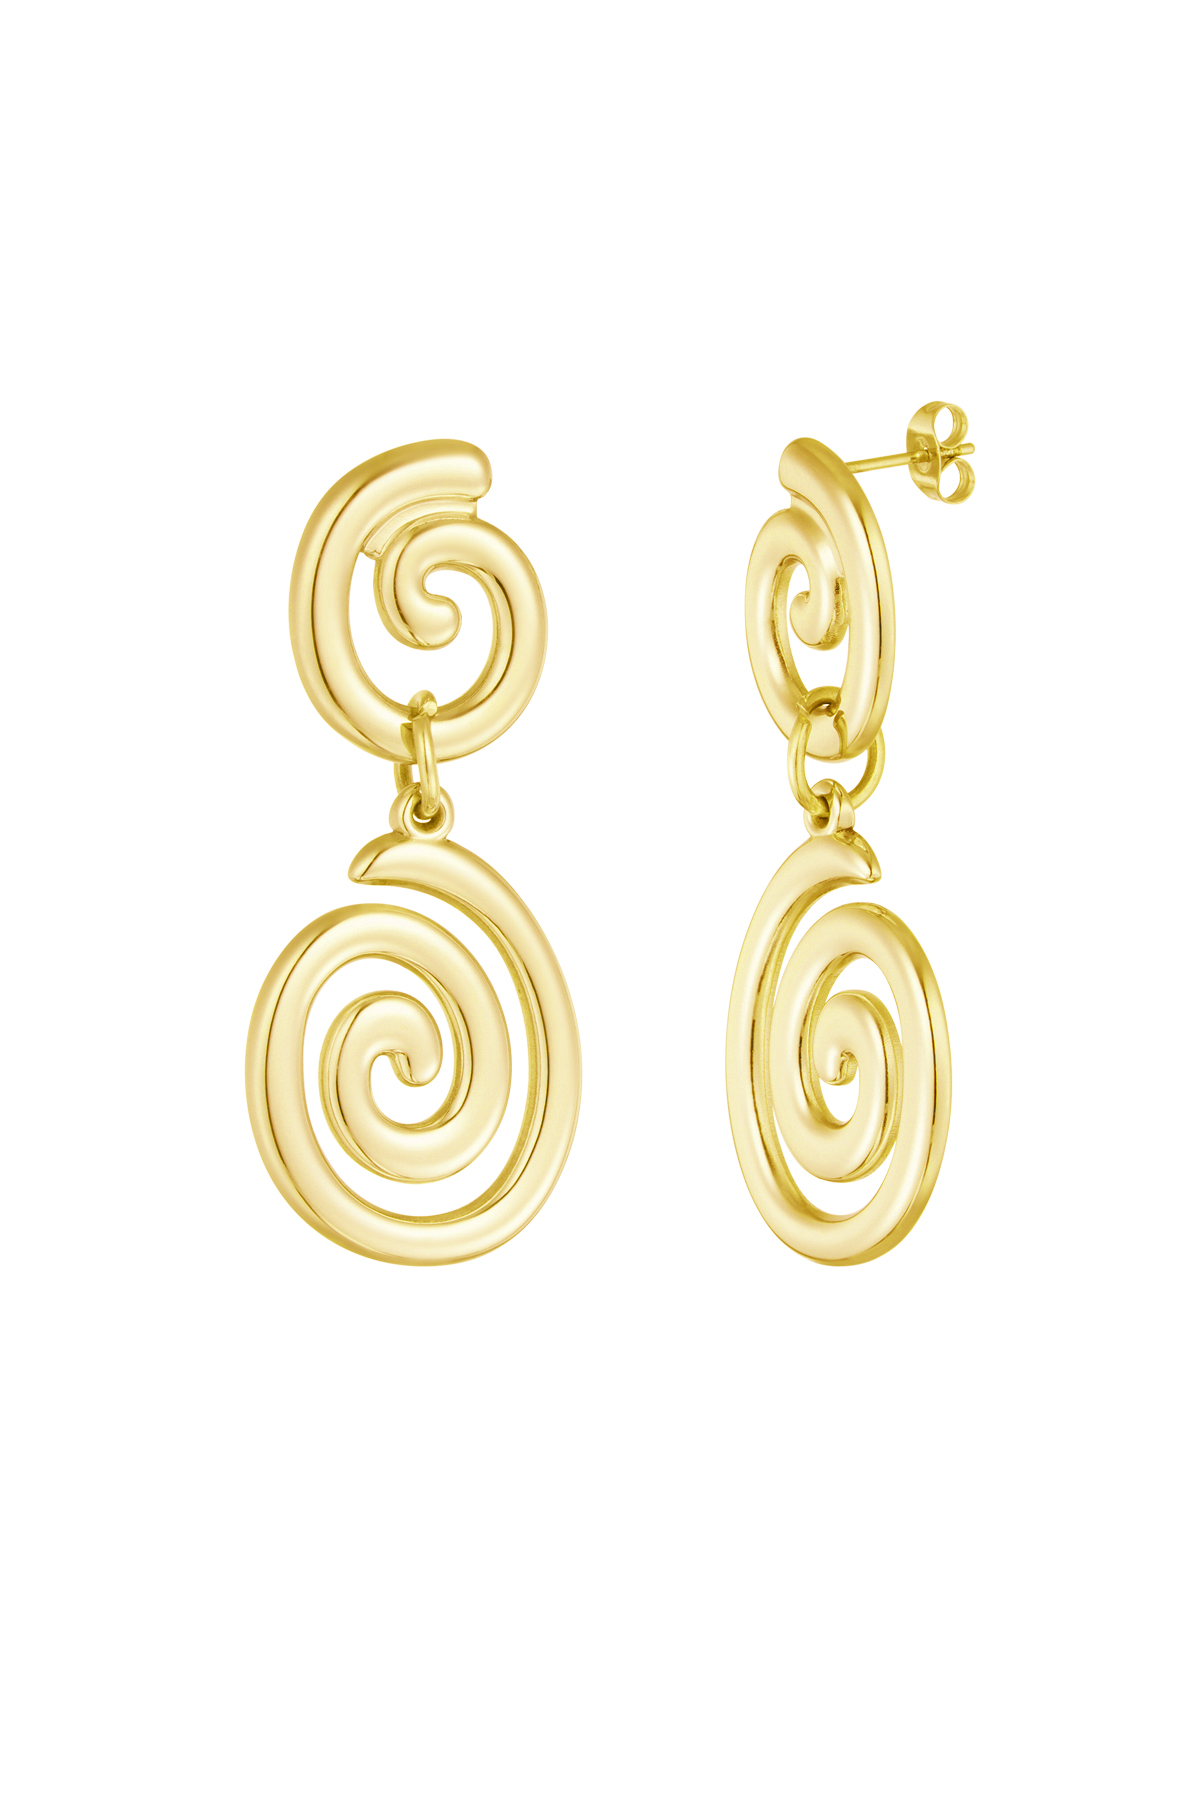 Earrings swirly wave - gold h5 